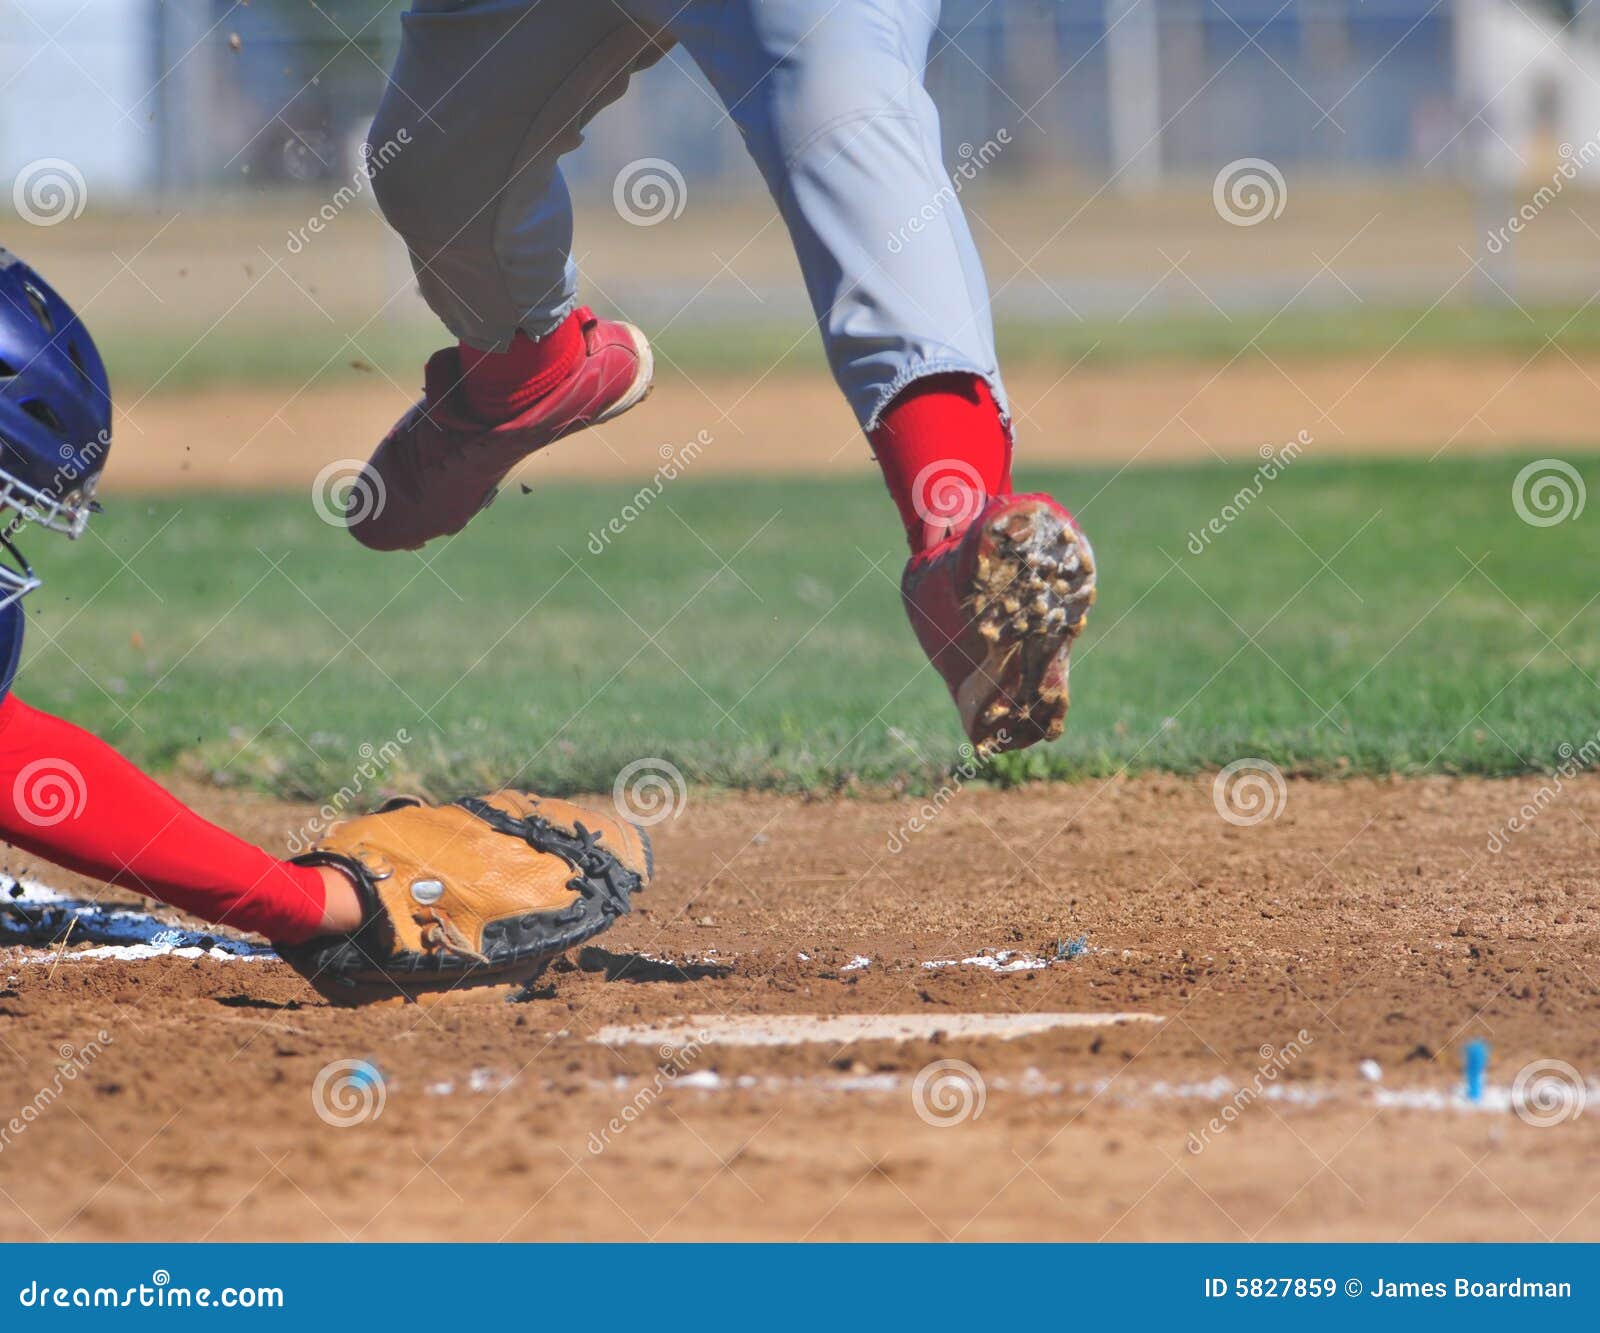 runner leaps over catchers mitt